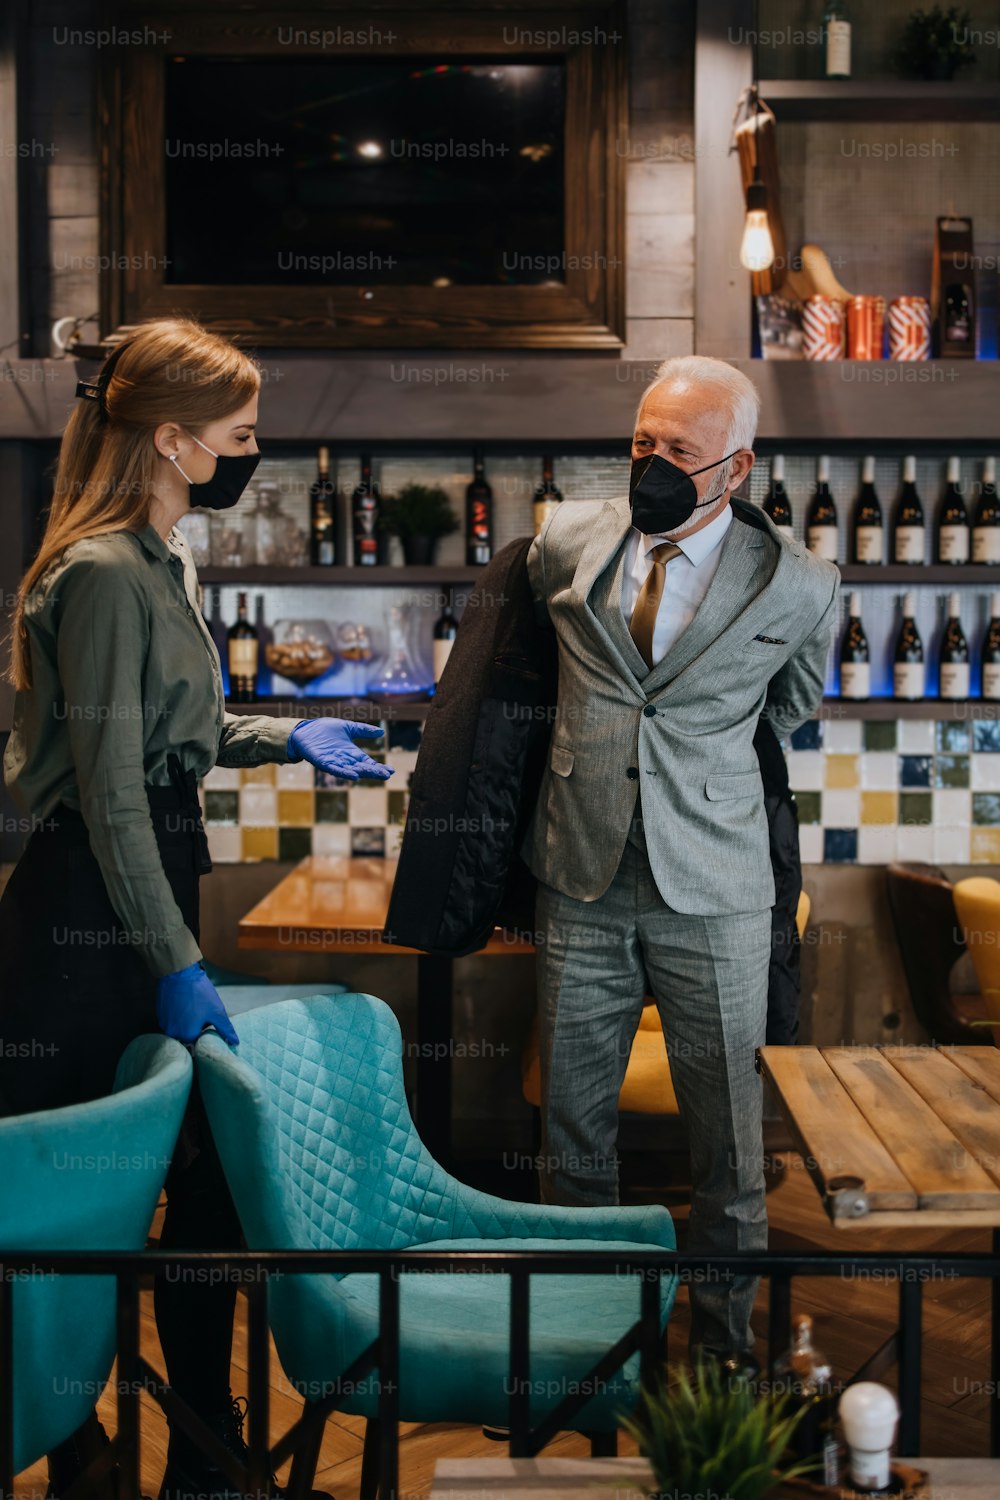 Uomo d'affari anziano fiducioso in piedi in un ristorante esclusivo. Si toglie il cappotto mentre la cameriera lo aiuta. Entrambi indossano maschere protettive contro l'infezione da virus.